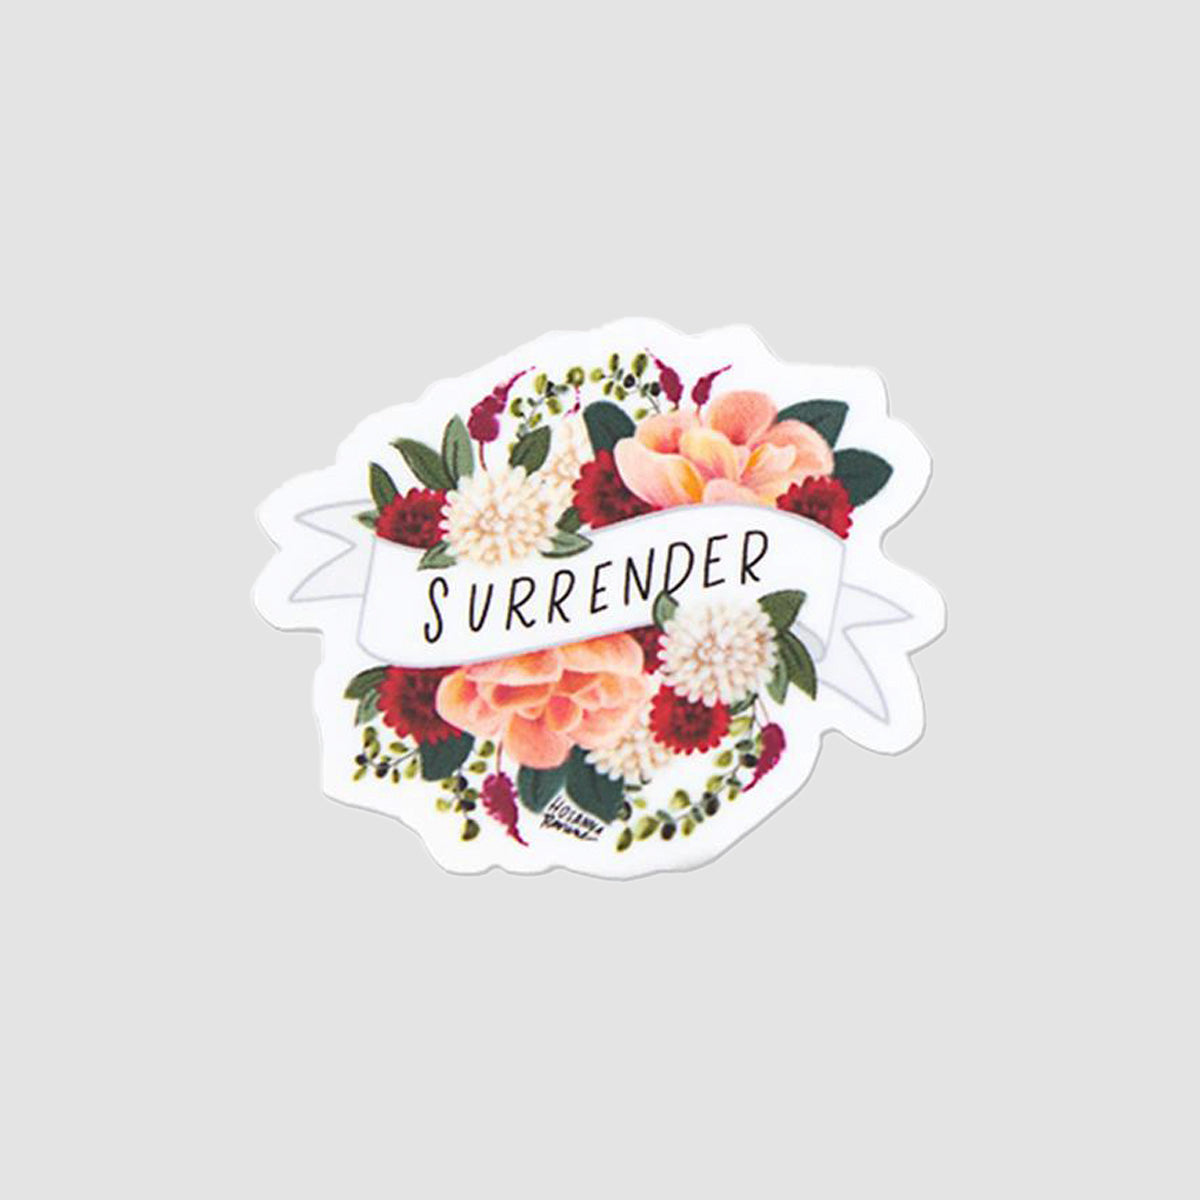 Surrender Floral Sticker